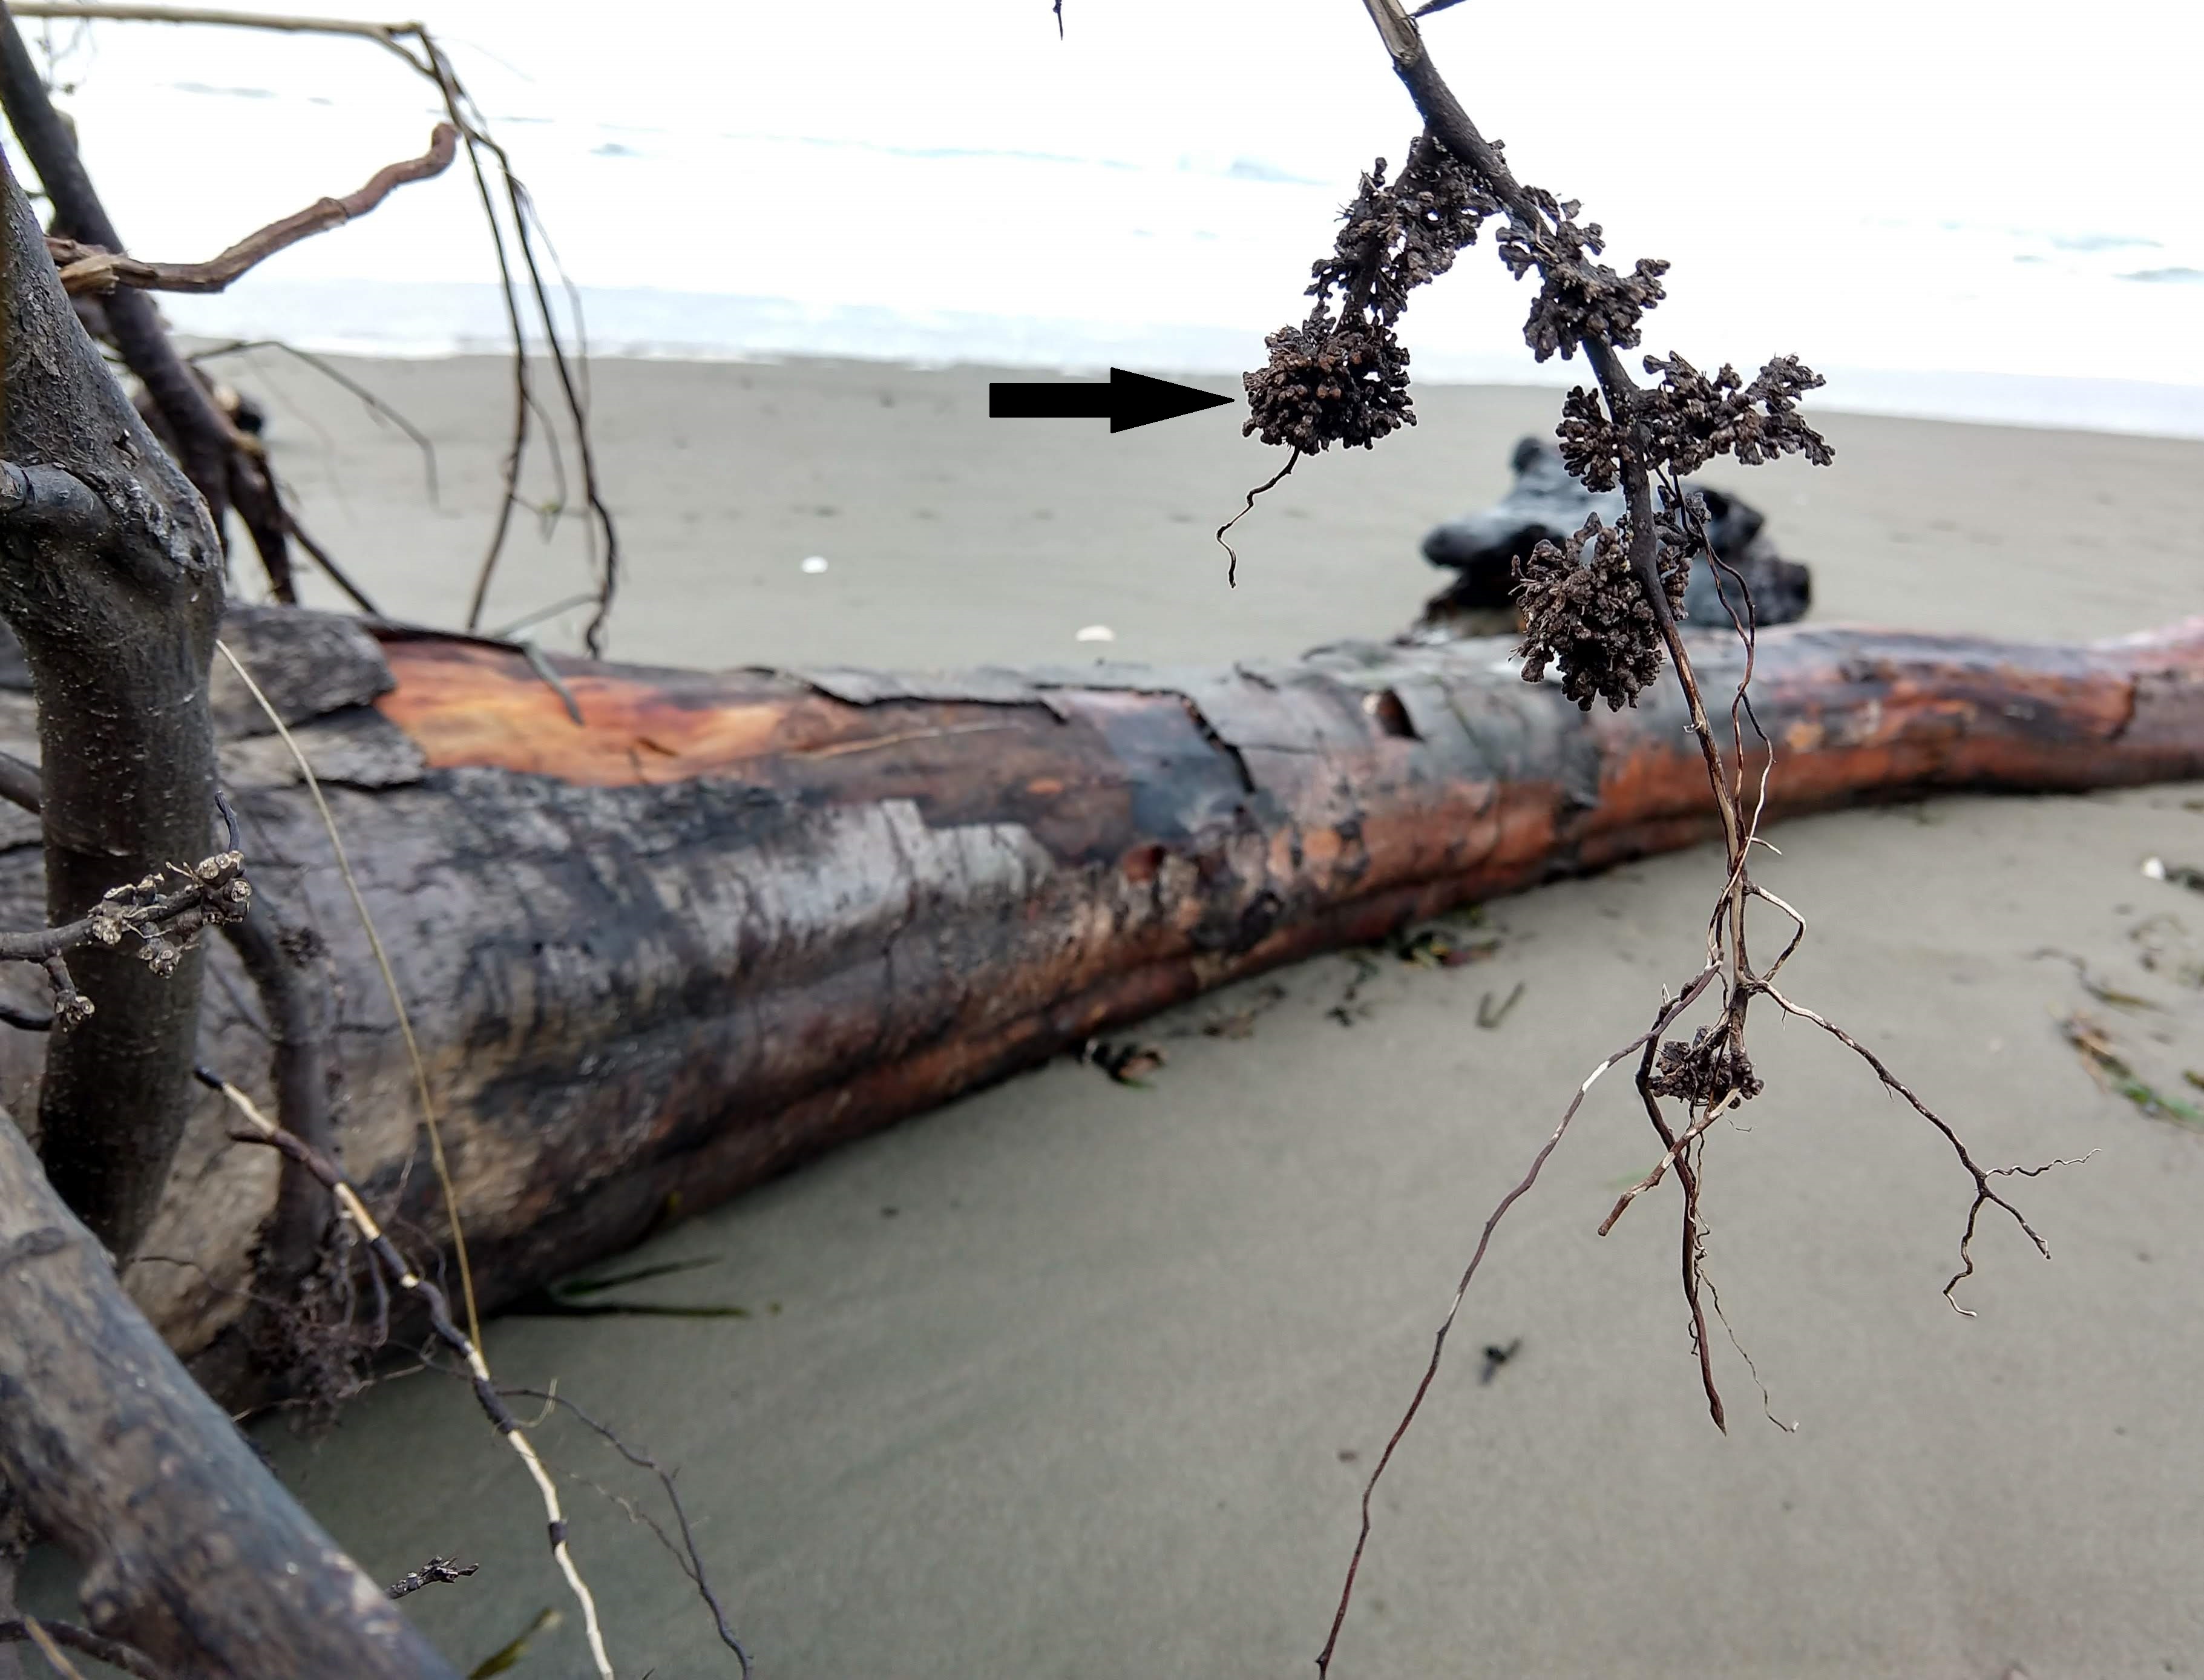 Un aliso arrastrado en la playa. Sus raíces tienen racimos de aspecto amaderado, indicados por una flecha.